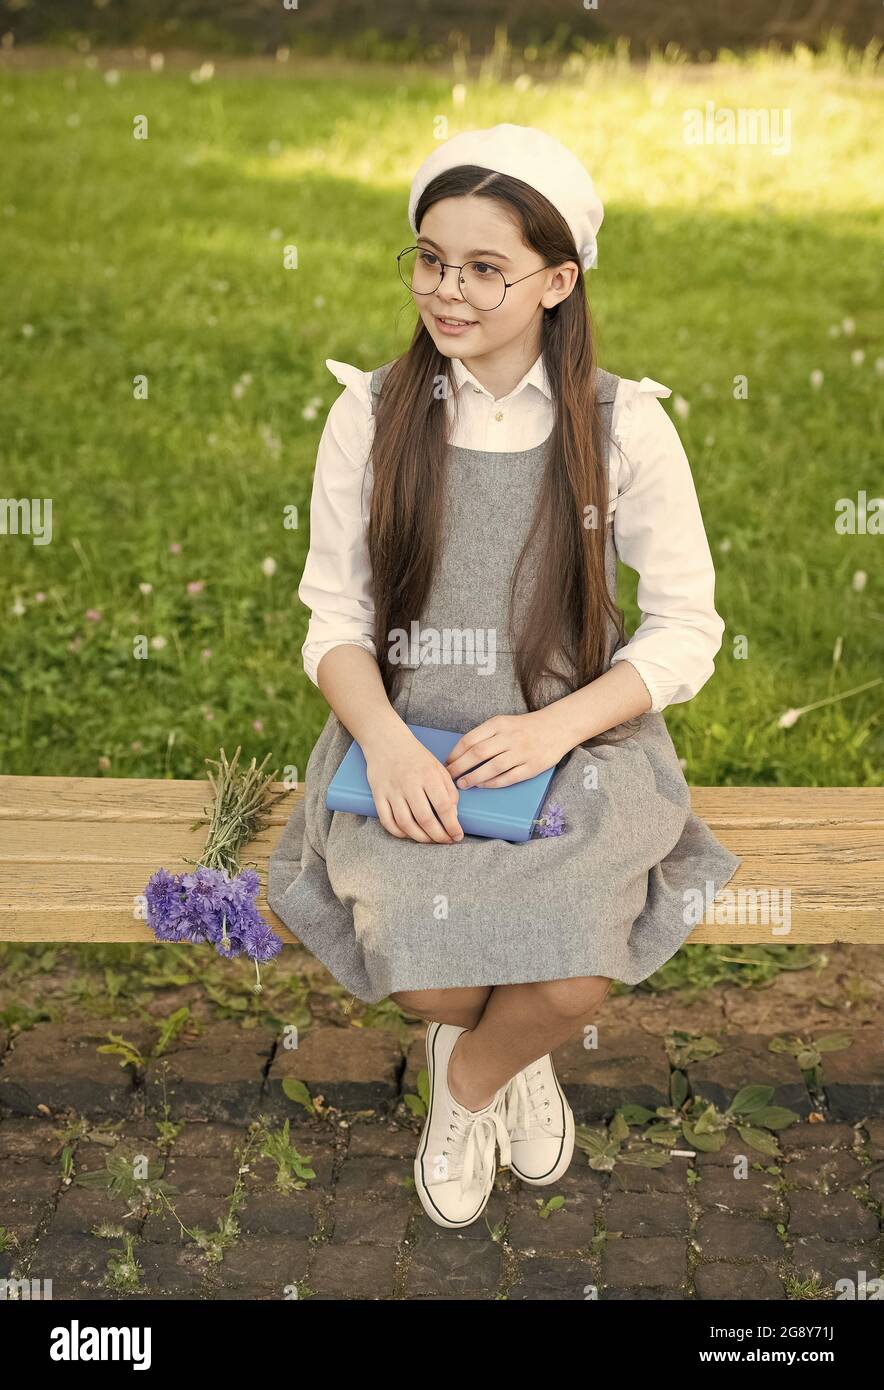 Defina su estilo. Un niño pequeño se sienta en un banco al aire libre. La  niña lleva vestido de escuela. Estilo uniforme escolar. De vuelta al estilo  de la escuela. Moda y